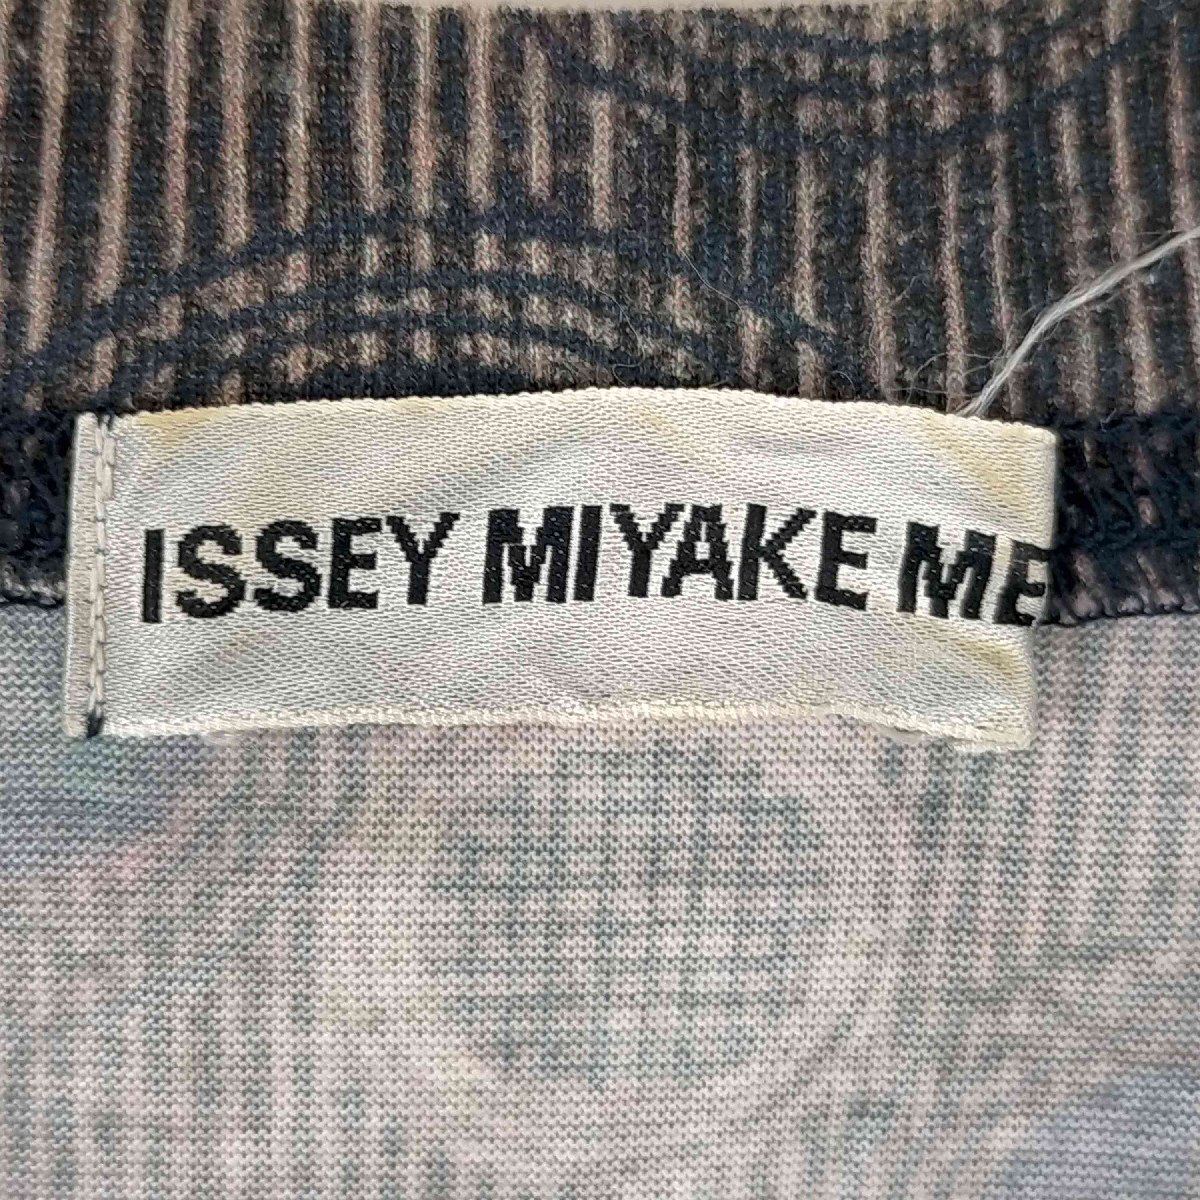 ISSEY MIYAKE MEN(イッセイミヤケメン) ドットプリントVネックTシャツ メンズ FREE 中古 古着 0326_画像6